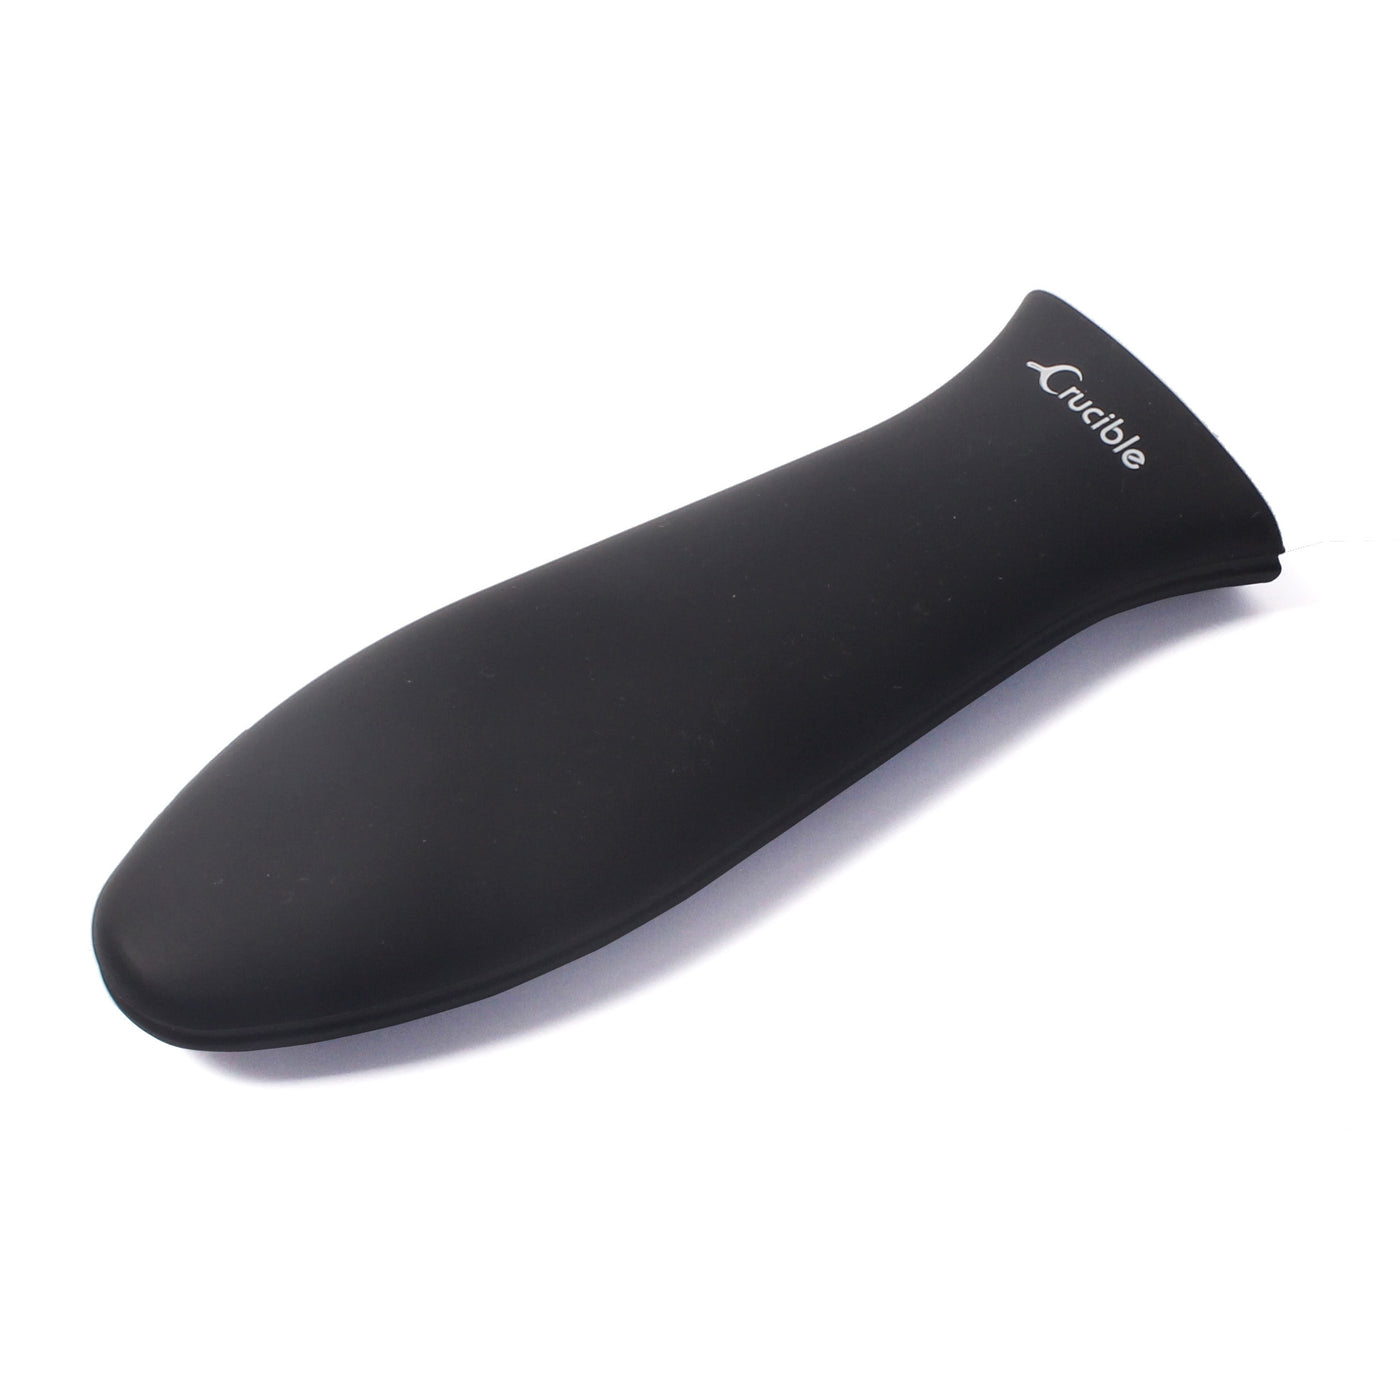 Silicone Hot Handle Holder + Assist Holder, Potholder (2-Pack Black) - Sleeve Grip, Handle Cover